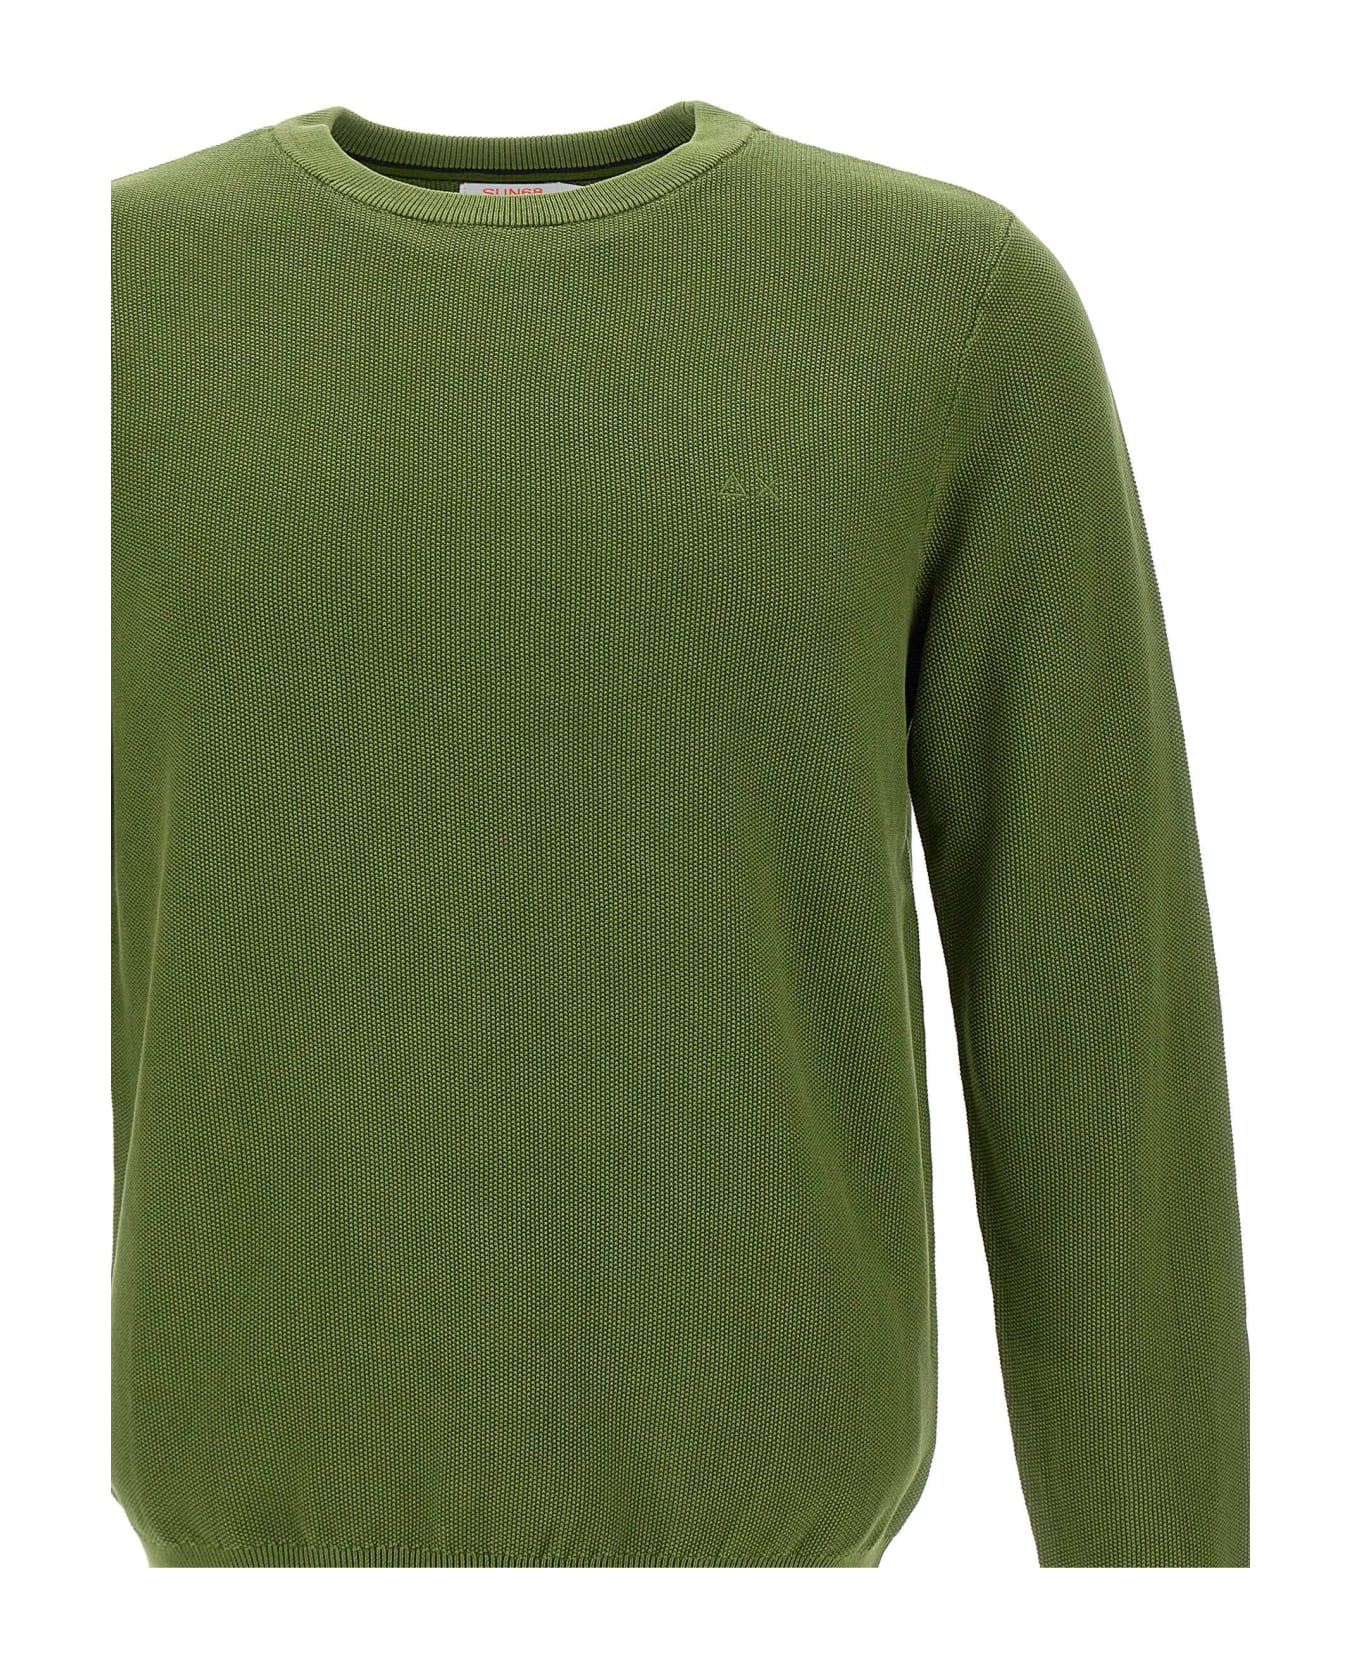 Sun 68 "round Vintage" Sweater Cotton - GREEN ニットウェア